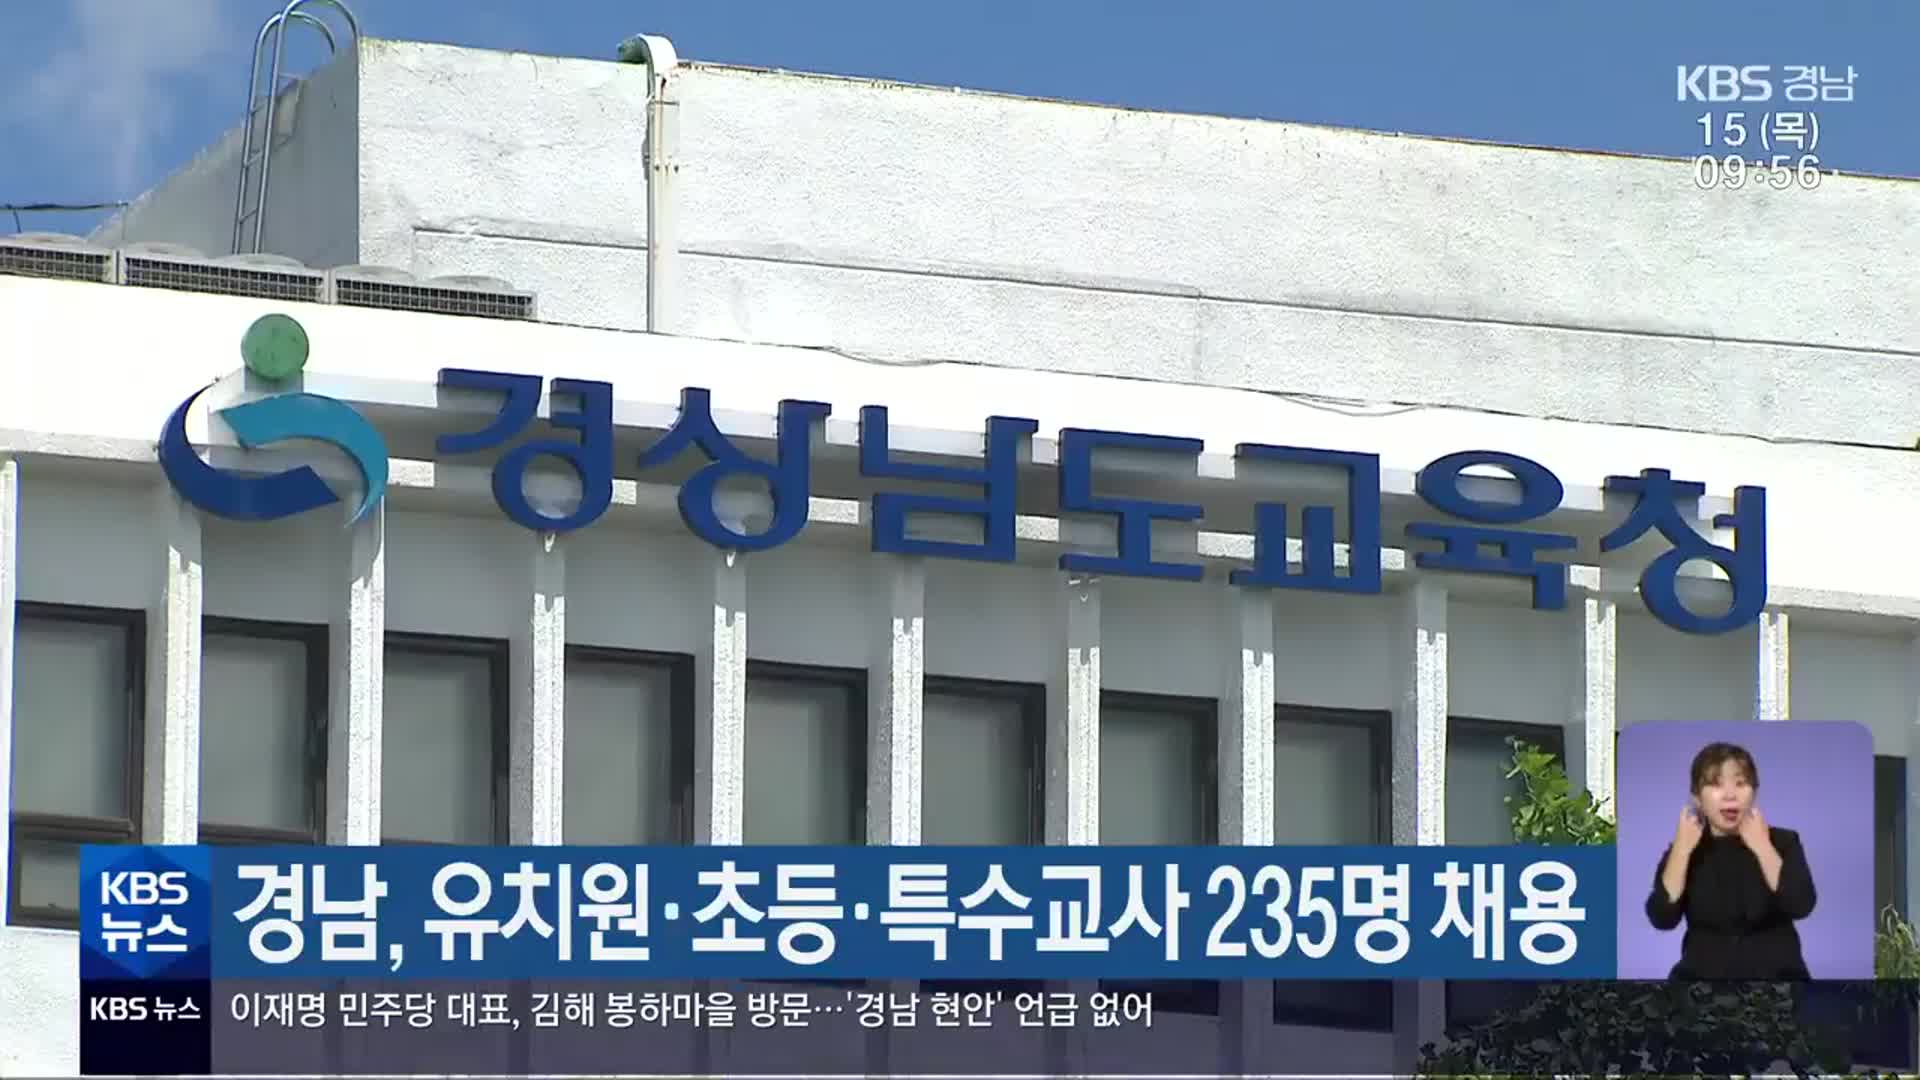 경남, 유치원·초등·특수교사 235명 채용